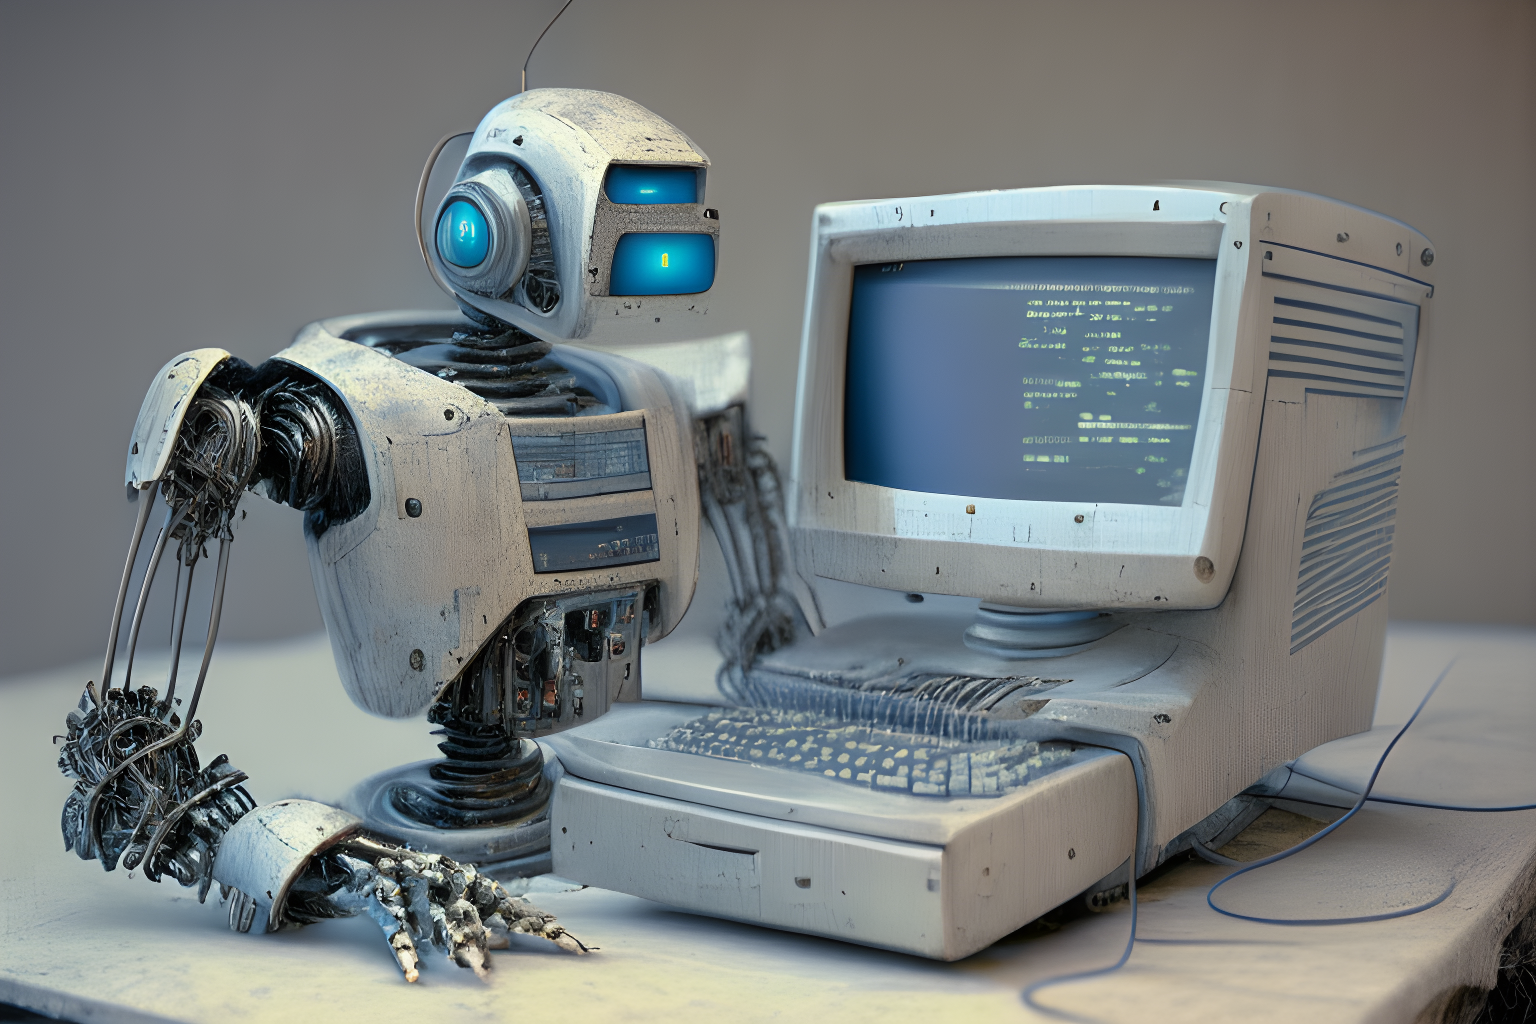 a robot using an old desktop computer